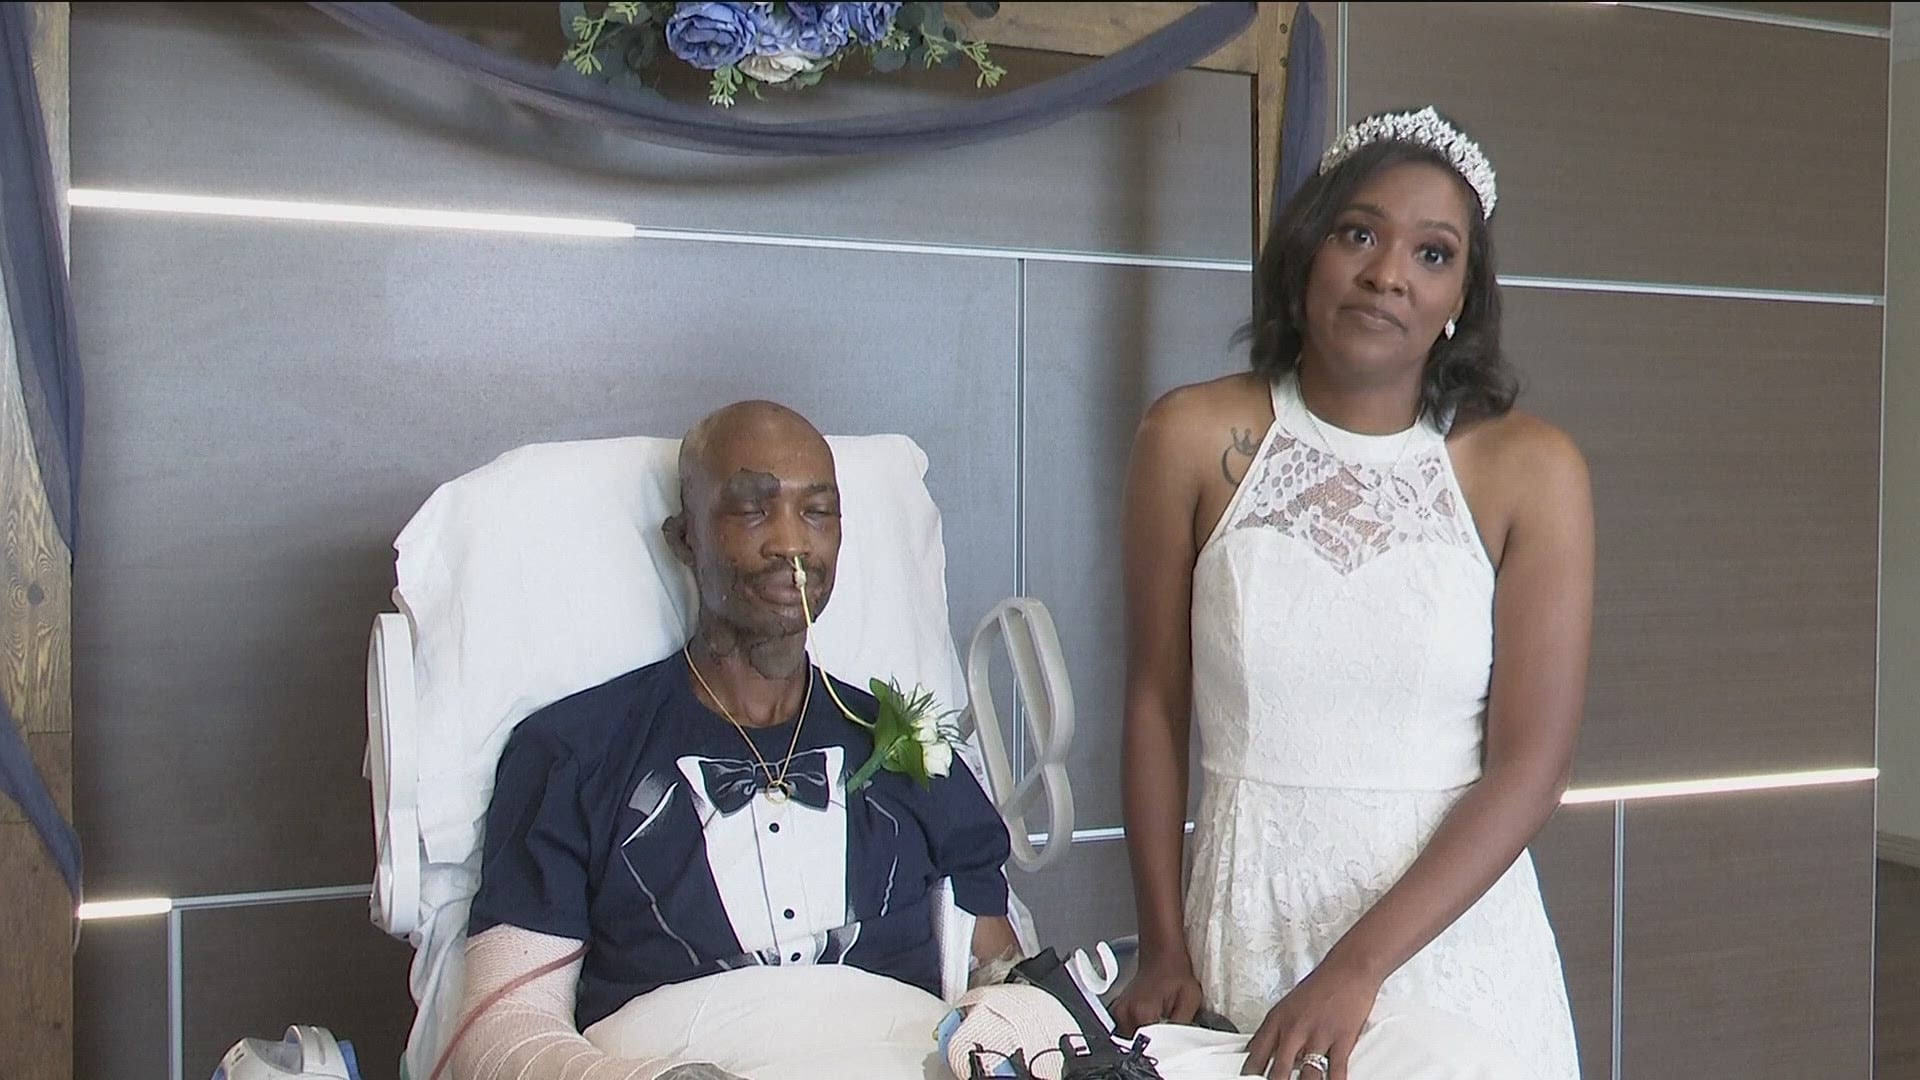 Pareja se casa en un hospital después de que el novio tuviera grave accidente